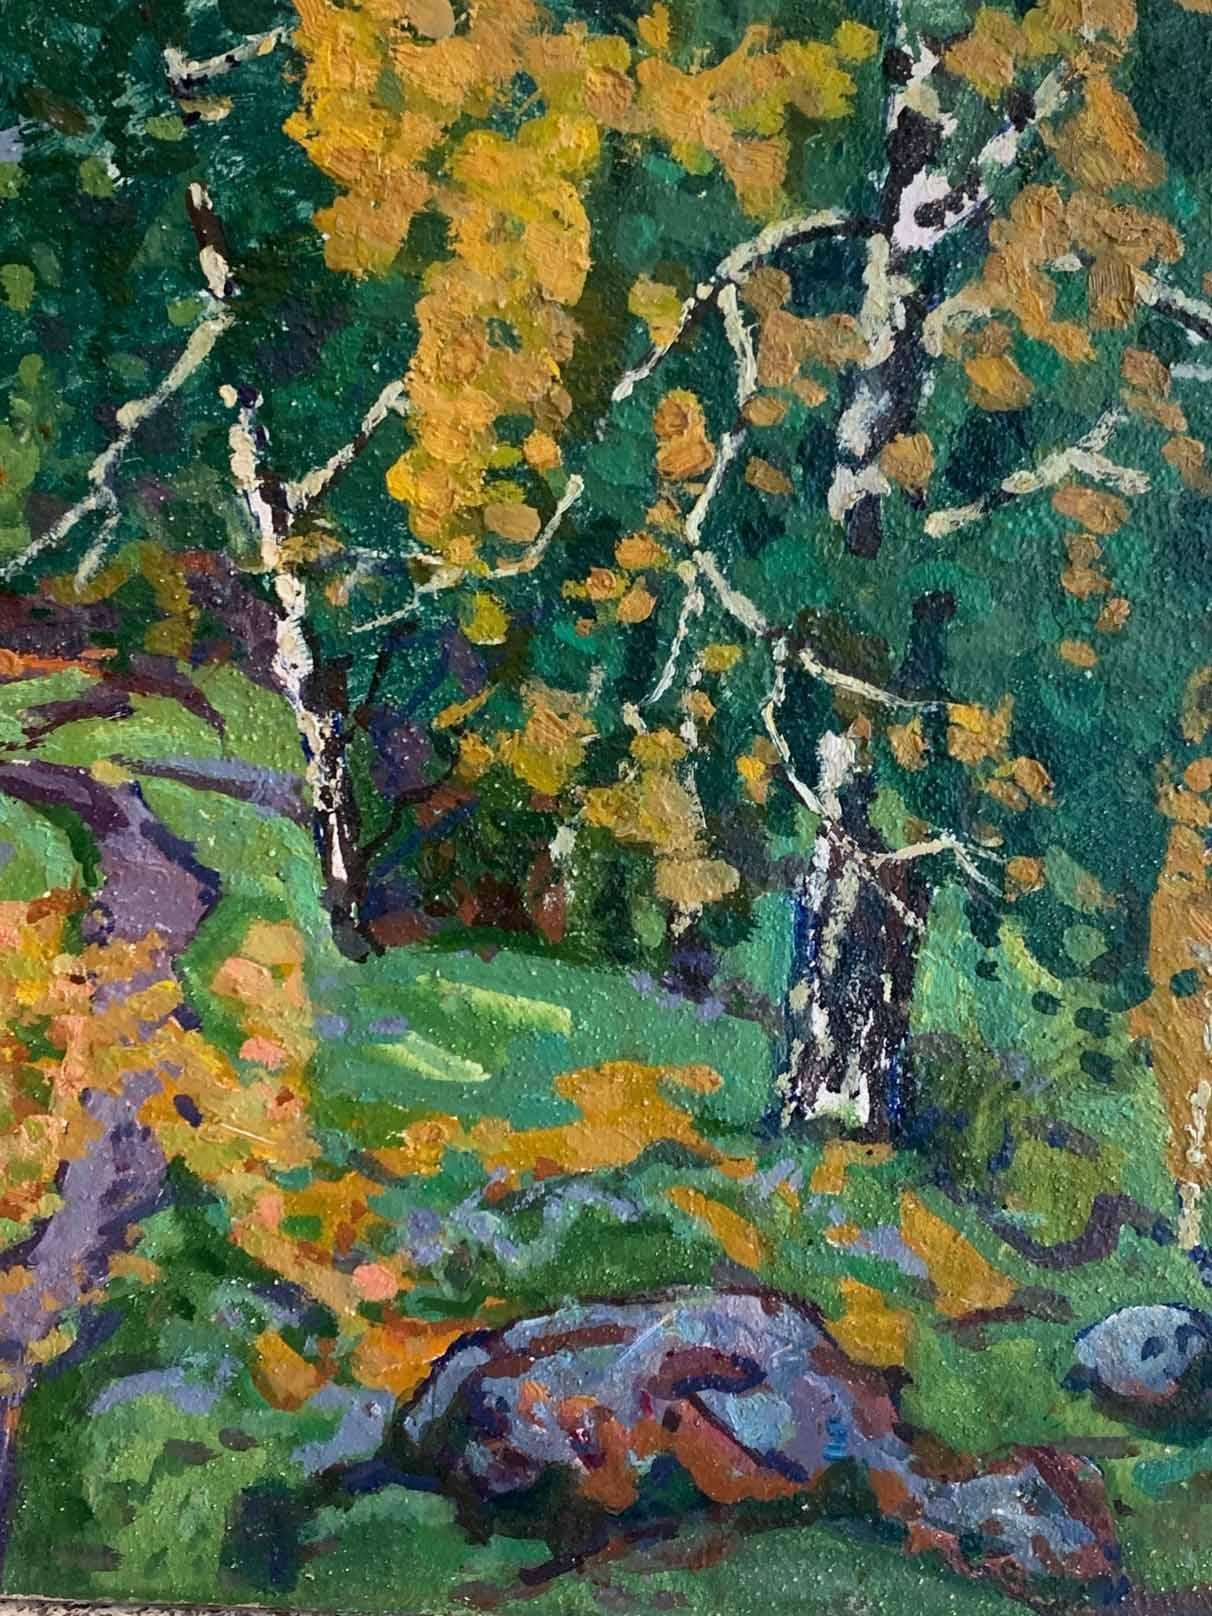 Evgeni Chuikov était un maître impressionniste pendant et après l'ère soviétique.  Son impressionnisme lyrique a été très apprécié, même s'il allait à l'encontre du style artistique officiel de l'Union soviétique, le réalisme socialiste.  Ses œuvres